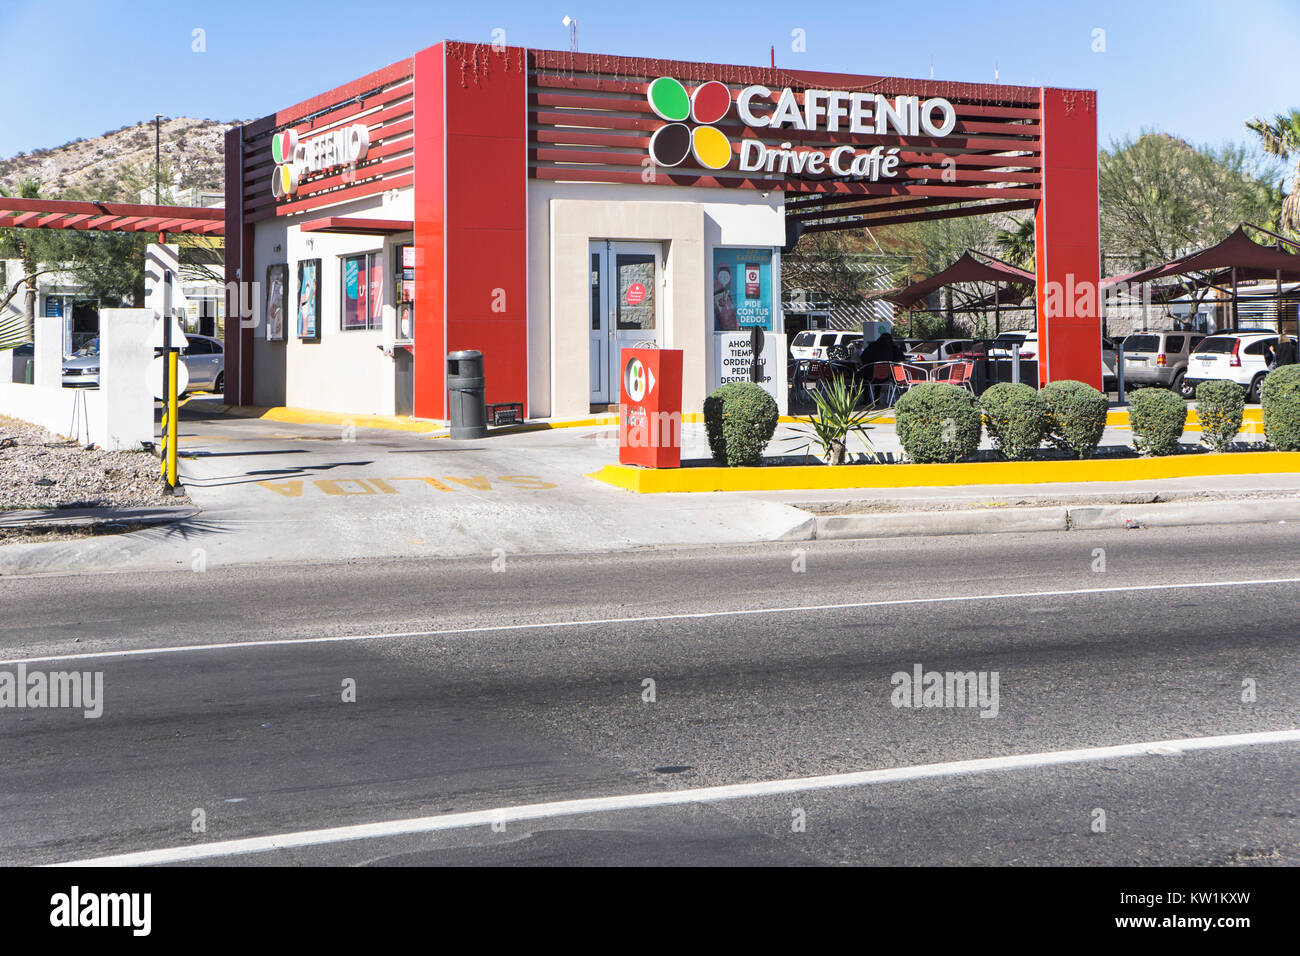 Colorata di rosso e bianco giardini a tema messicano unità stradale attraverso la catena coffee shop con parcheggio e posti a sedere in un patio esterno accanto all'autostrada federale 15 Foto Stock